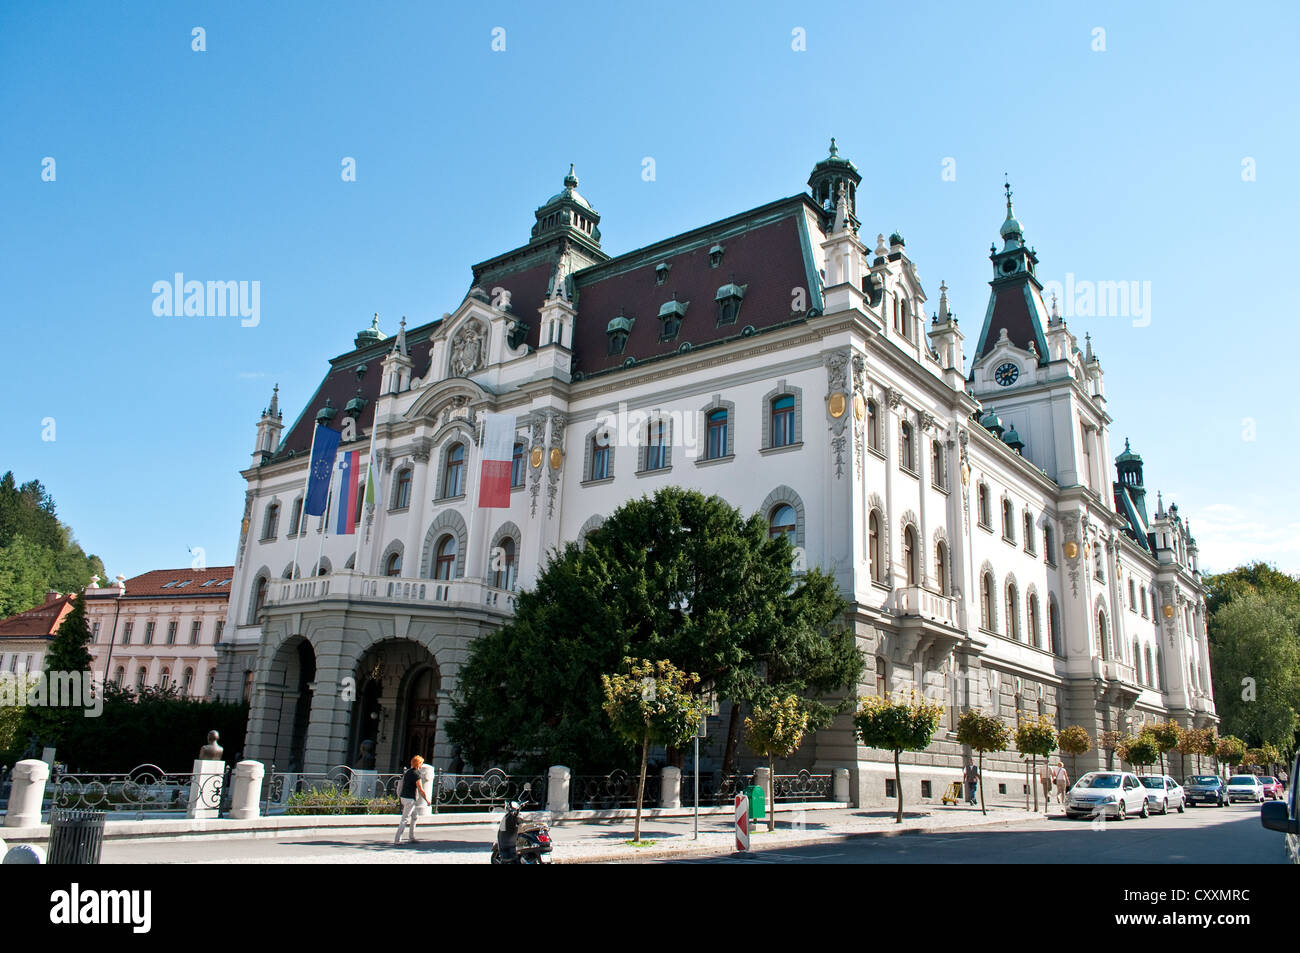 University of Ljubljana building on Congress Square, Ljubljana, Slovenia Stock Photo